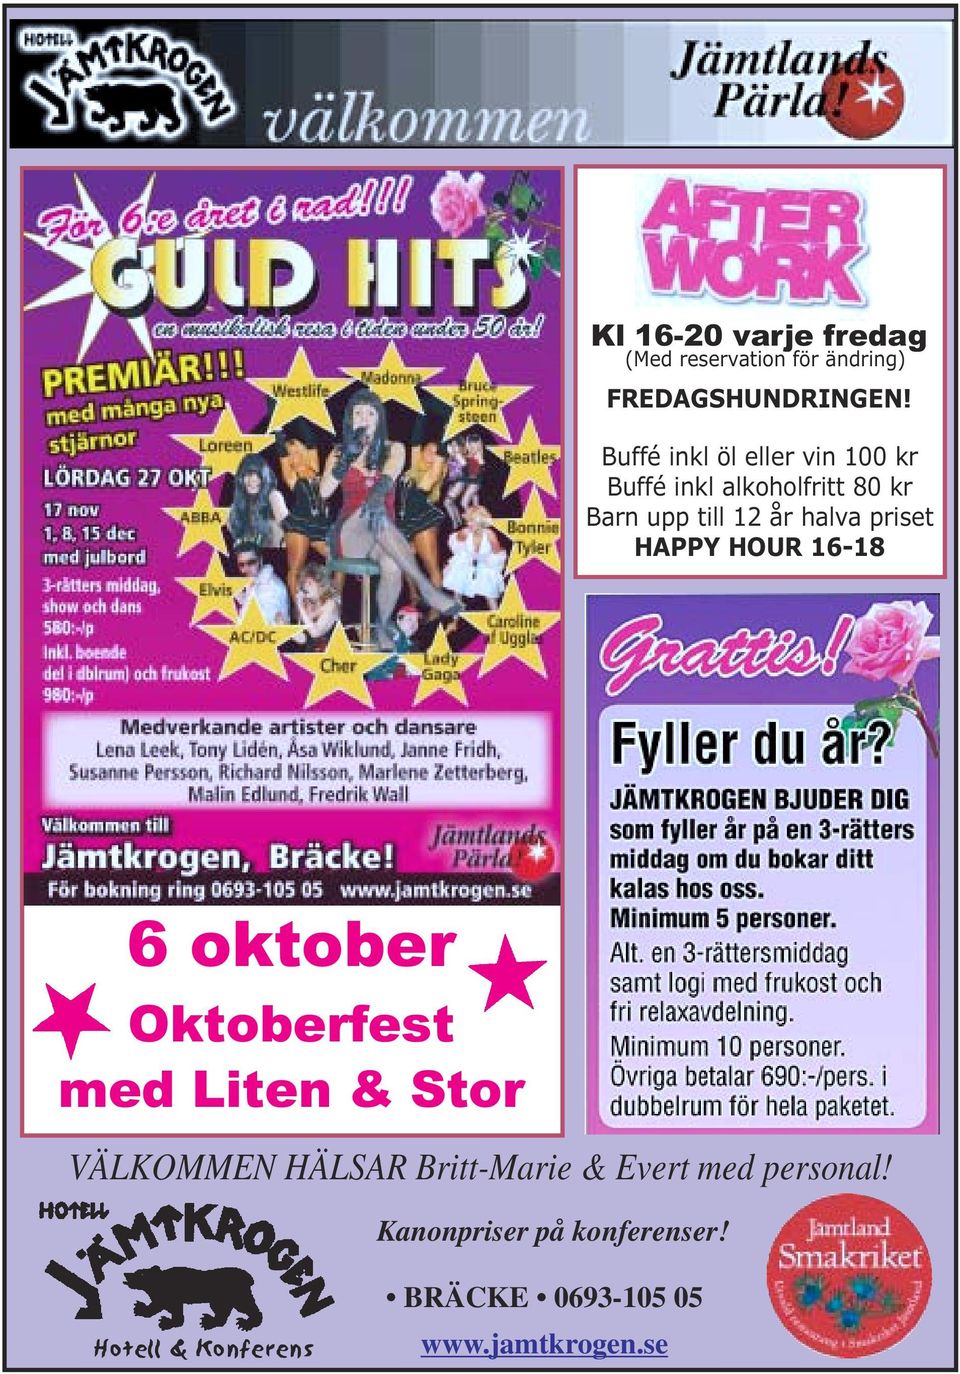 priset HAPPY HOUR 16-18 6 oktober Oktoberfest med Liten & Stor VÄLKOMMEN HÄLSAR